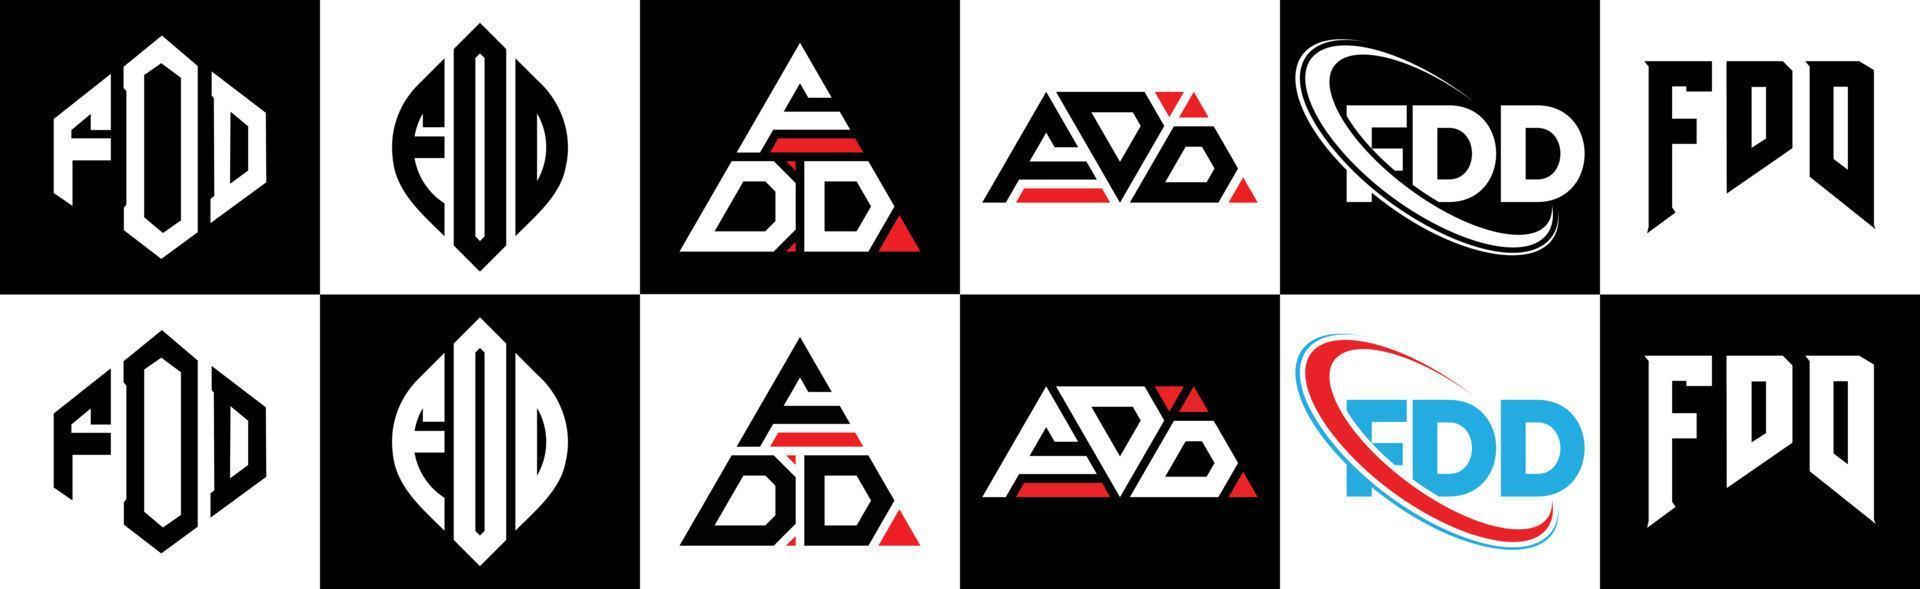 fdd-Buchstaben-Logo-Design in sechs Stilen. fdd polygon, kreis, dreieck, sechseck, flacher und einfacher stil mit schwarz-weißem buchstabenlogo in einer zeichenfläche. fdd minimalistisches und klassisches Logo vektor